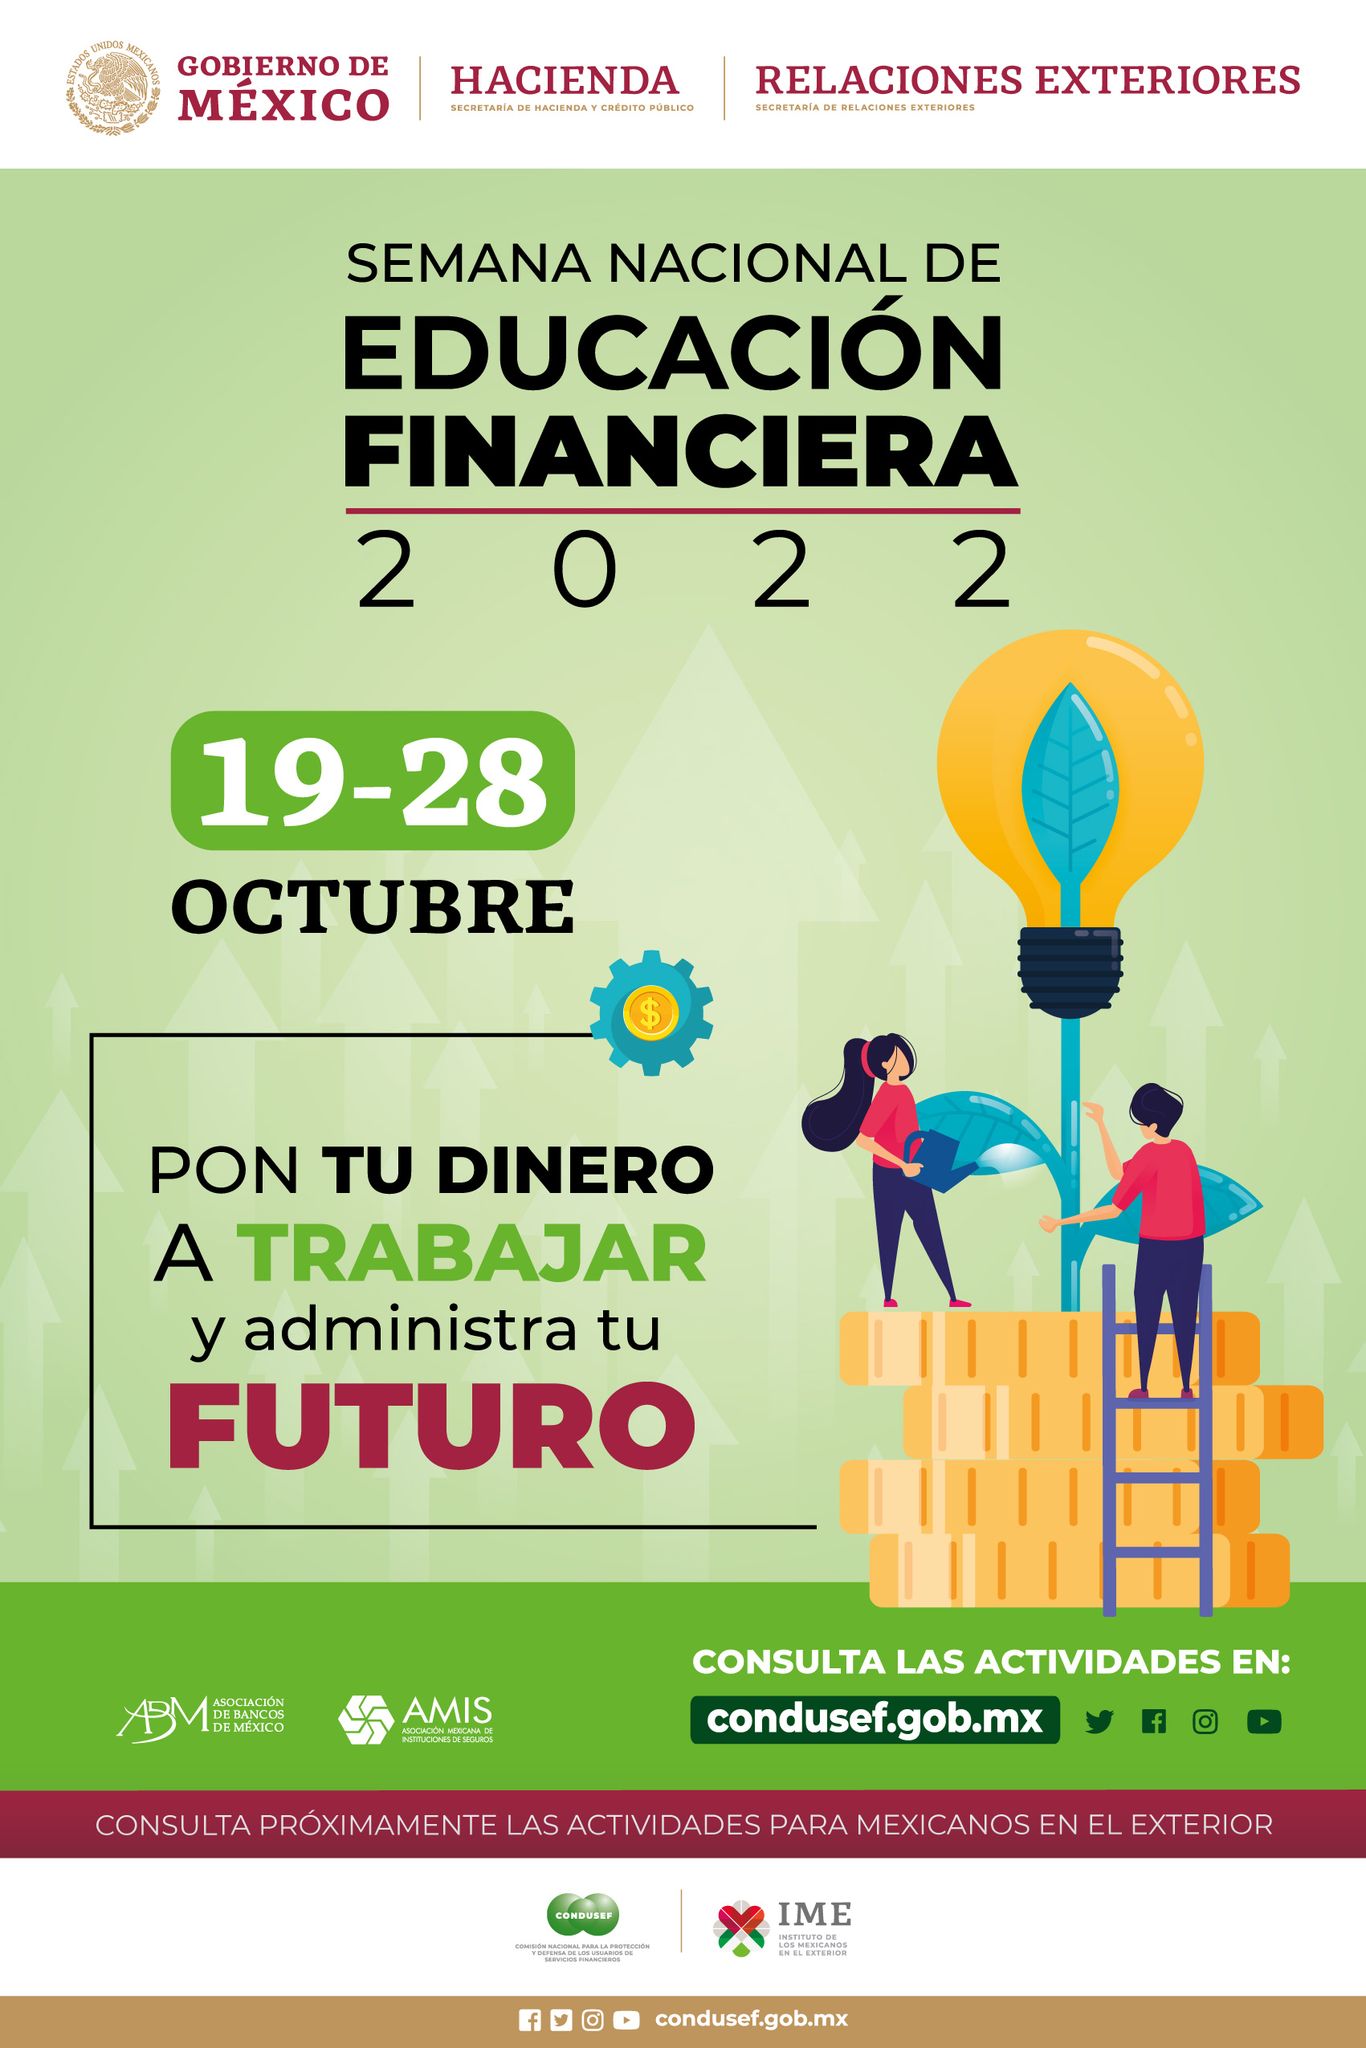 Semana Nacional de Educación Financiera 2022